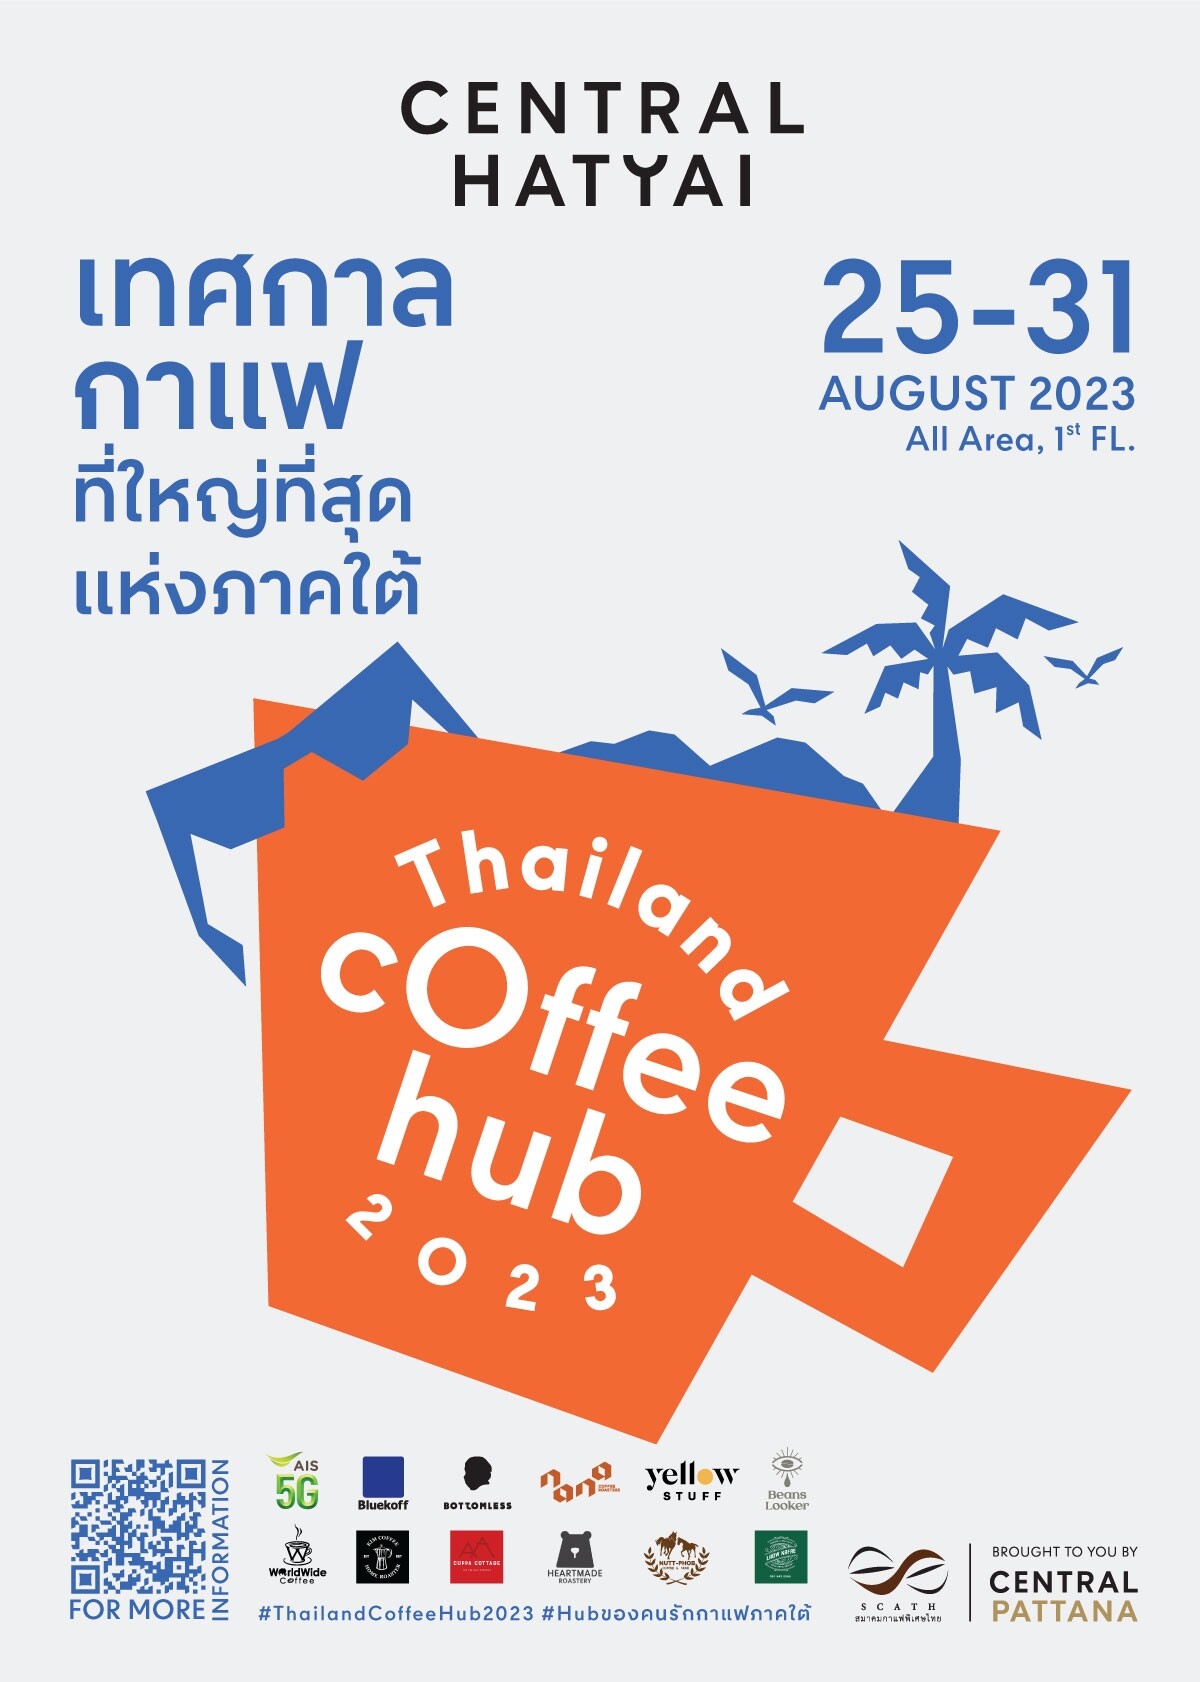 ครั้งแรกกับงานกาแฟที่ยิ่งใหญ่ที่สุดในภาคใต้ กับงาน Thailand Coffee Hub 2023 Hat Yai ตั้งแต่วันที่ 25-31 สิงหาคม 2566 ณ ศูนย์การค้าเซ็นทรัล หาดใหญ่